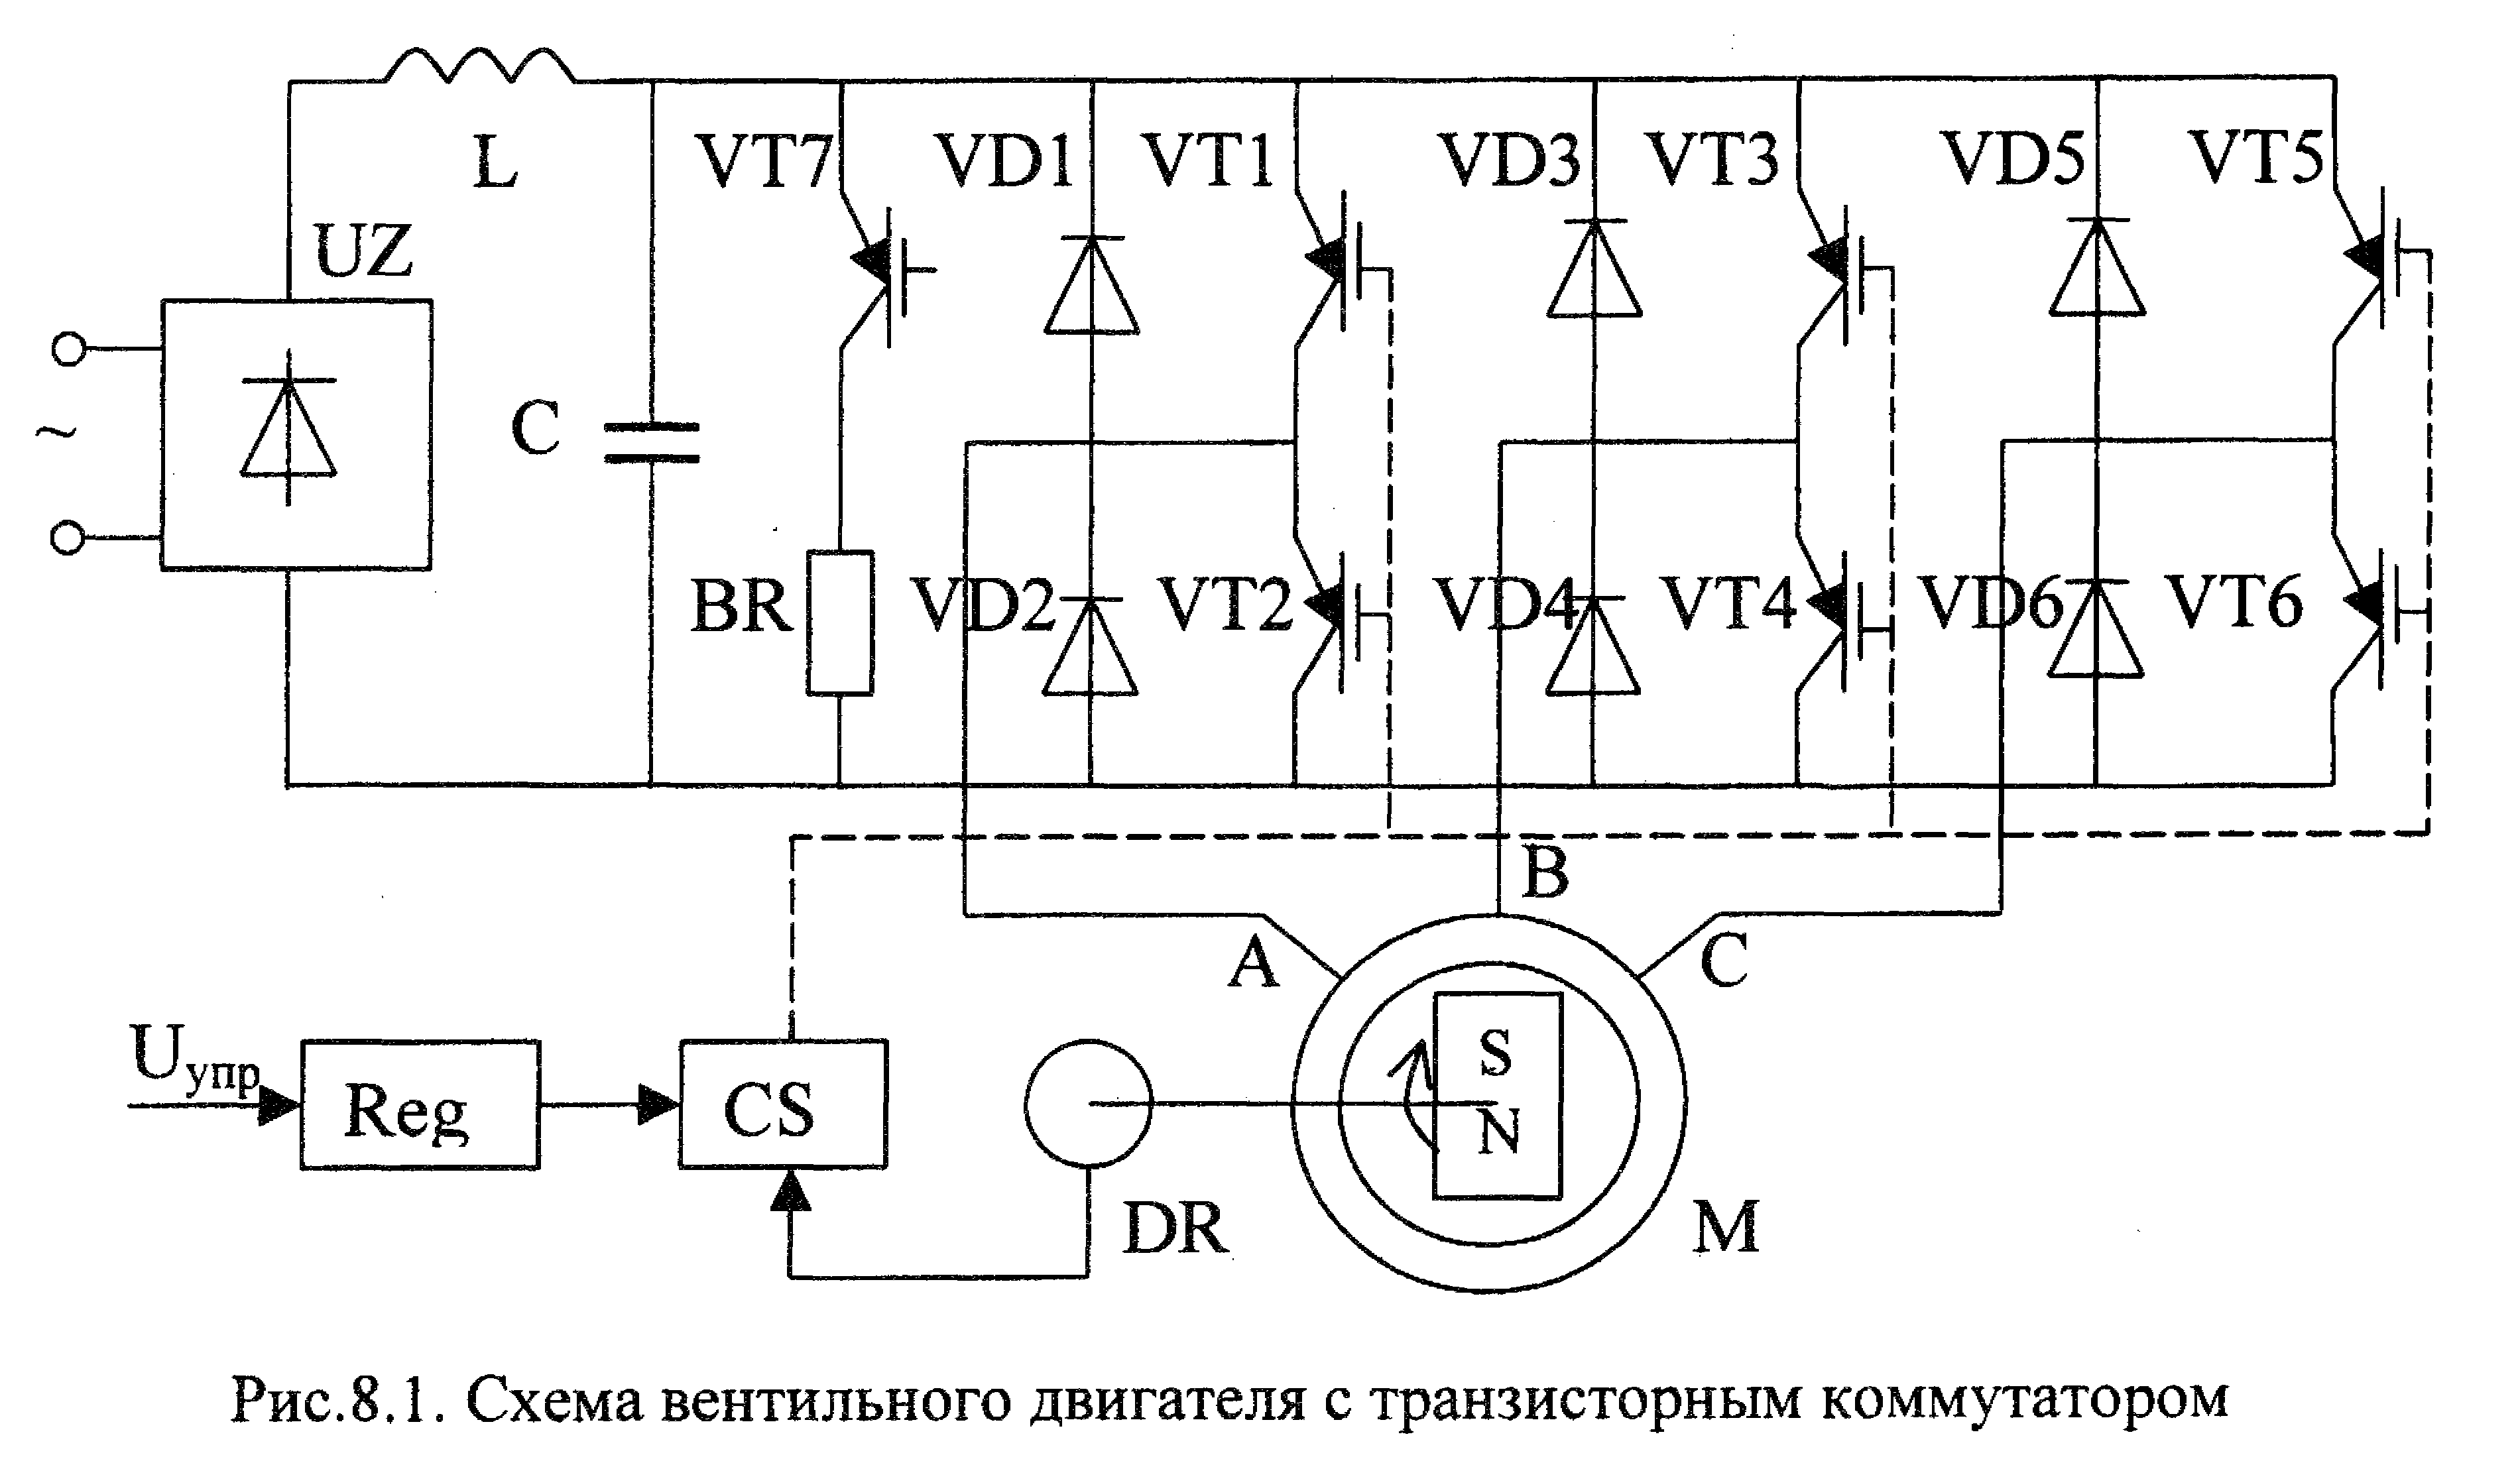 Полупроводники. структура полупроводников. типы проводимости и возникновение тока в полупроводниках